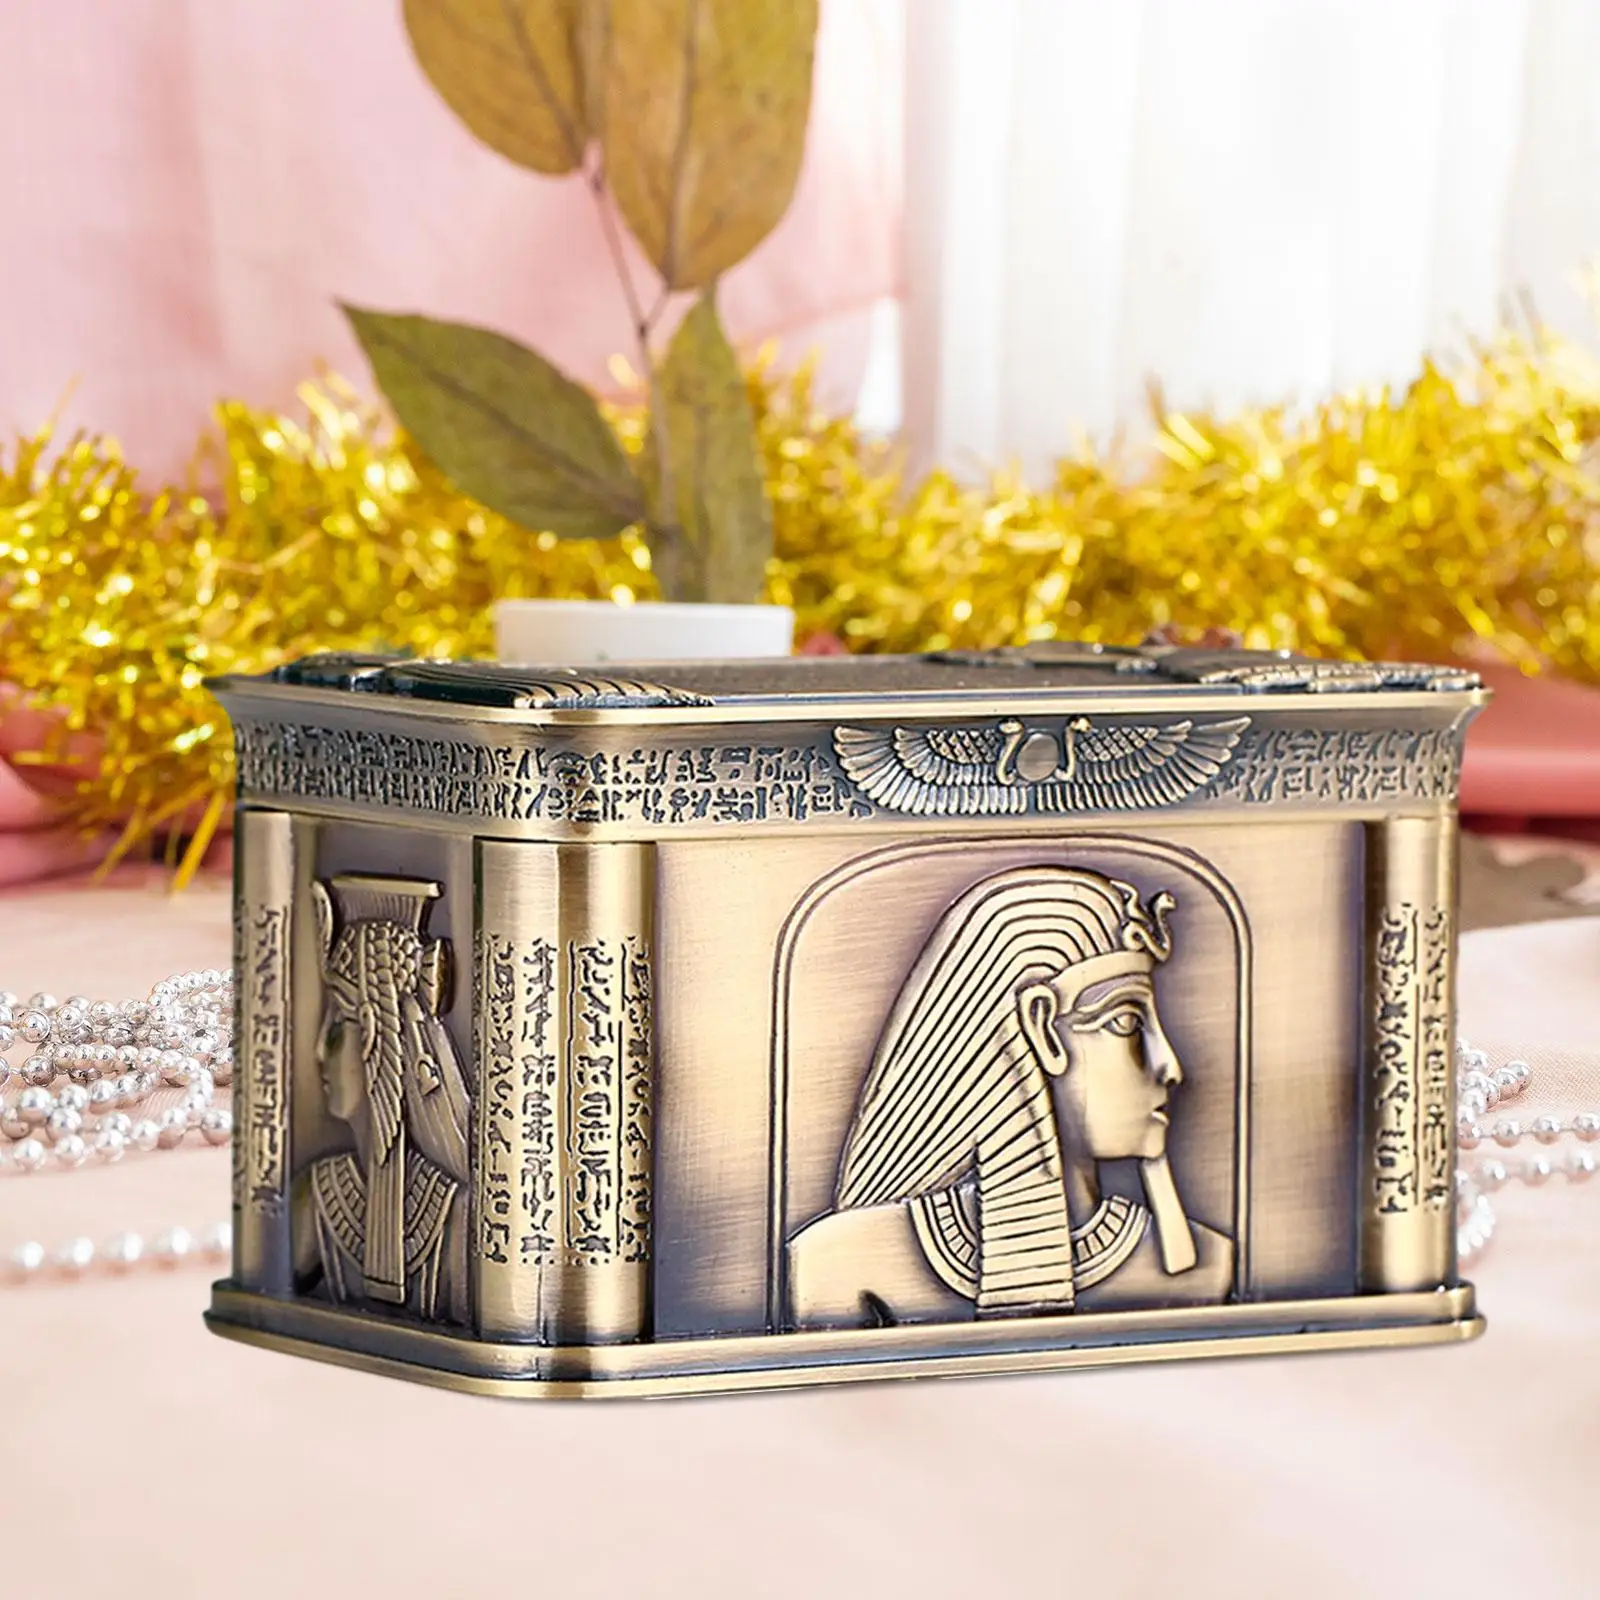 Jewelry Box Bracelets Creative Decorative Birthday Gift Jewelry Storage Case